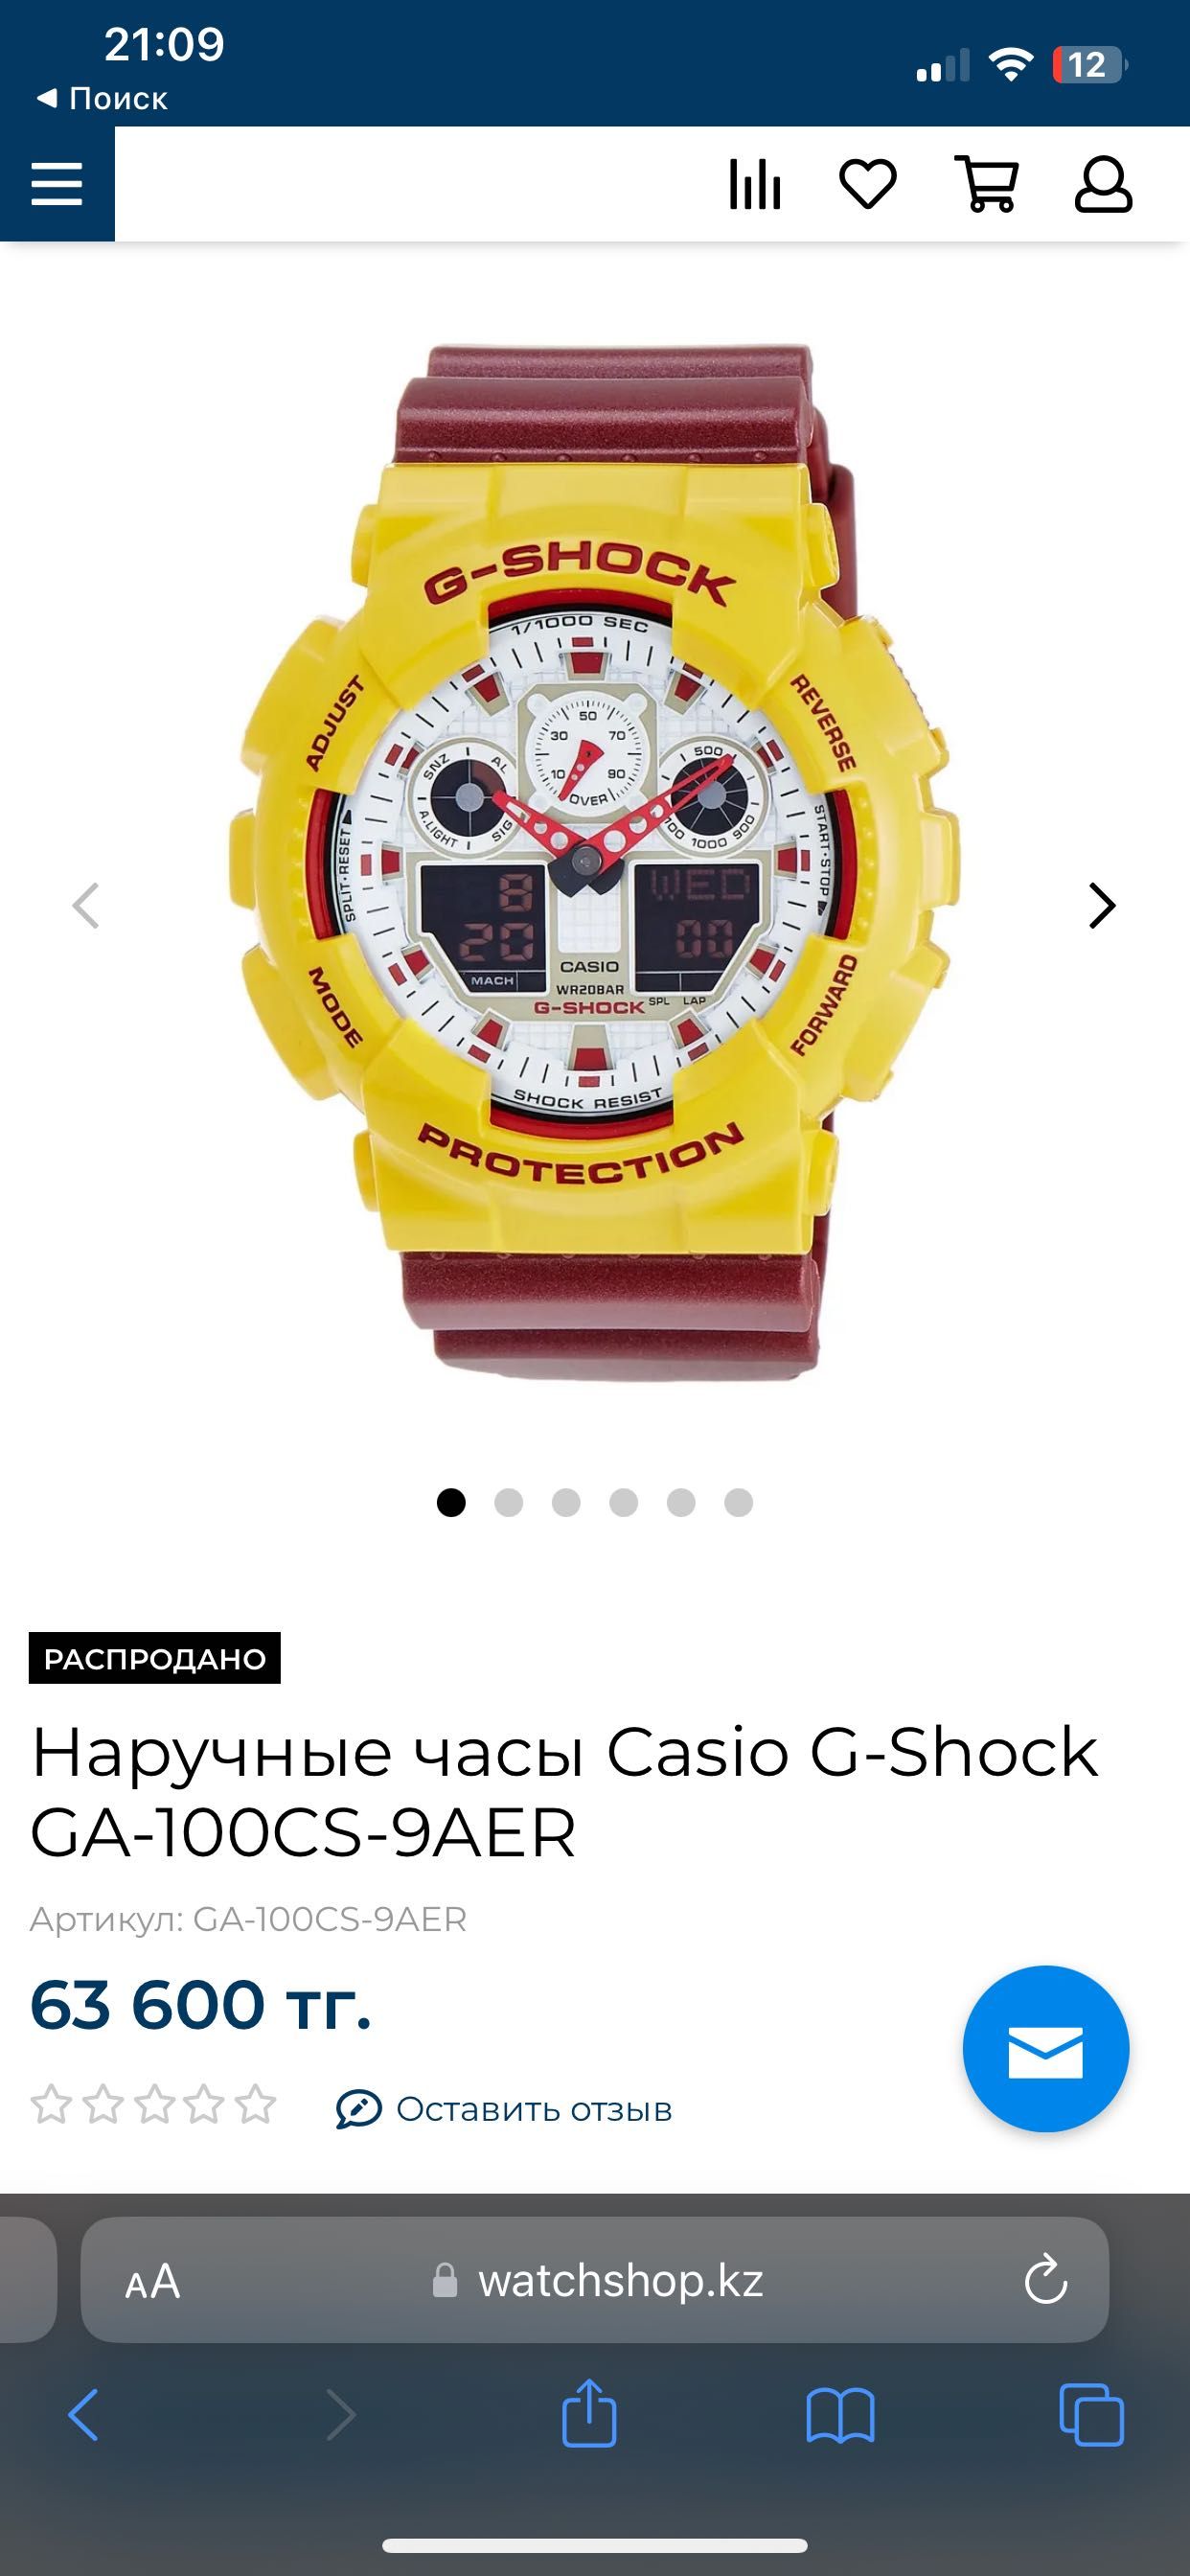 Часы G-SHOCK спортивные беговые оригинал !! Не реплика !!